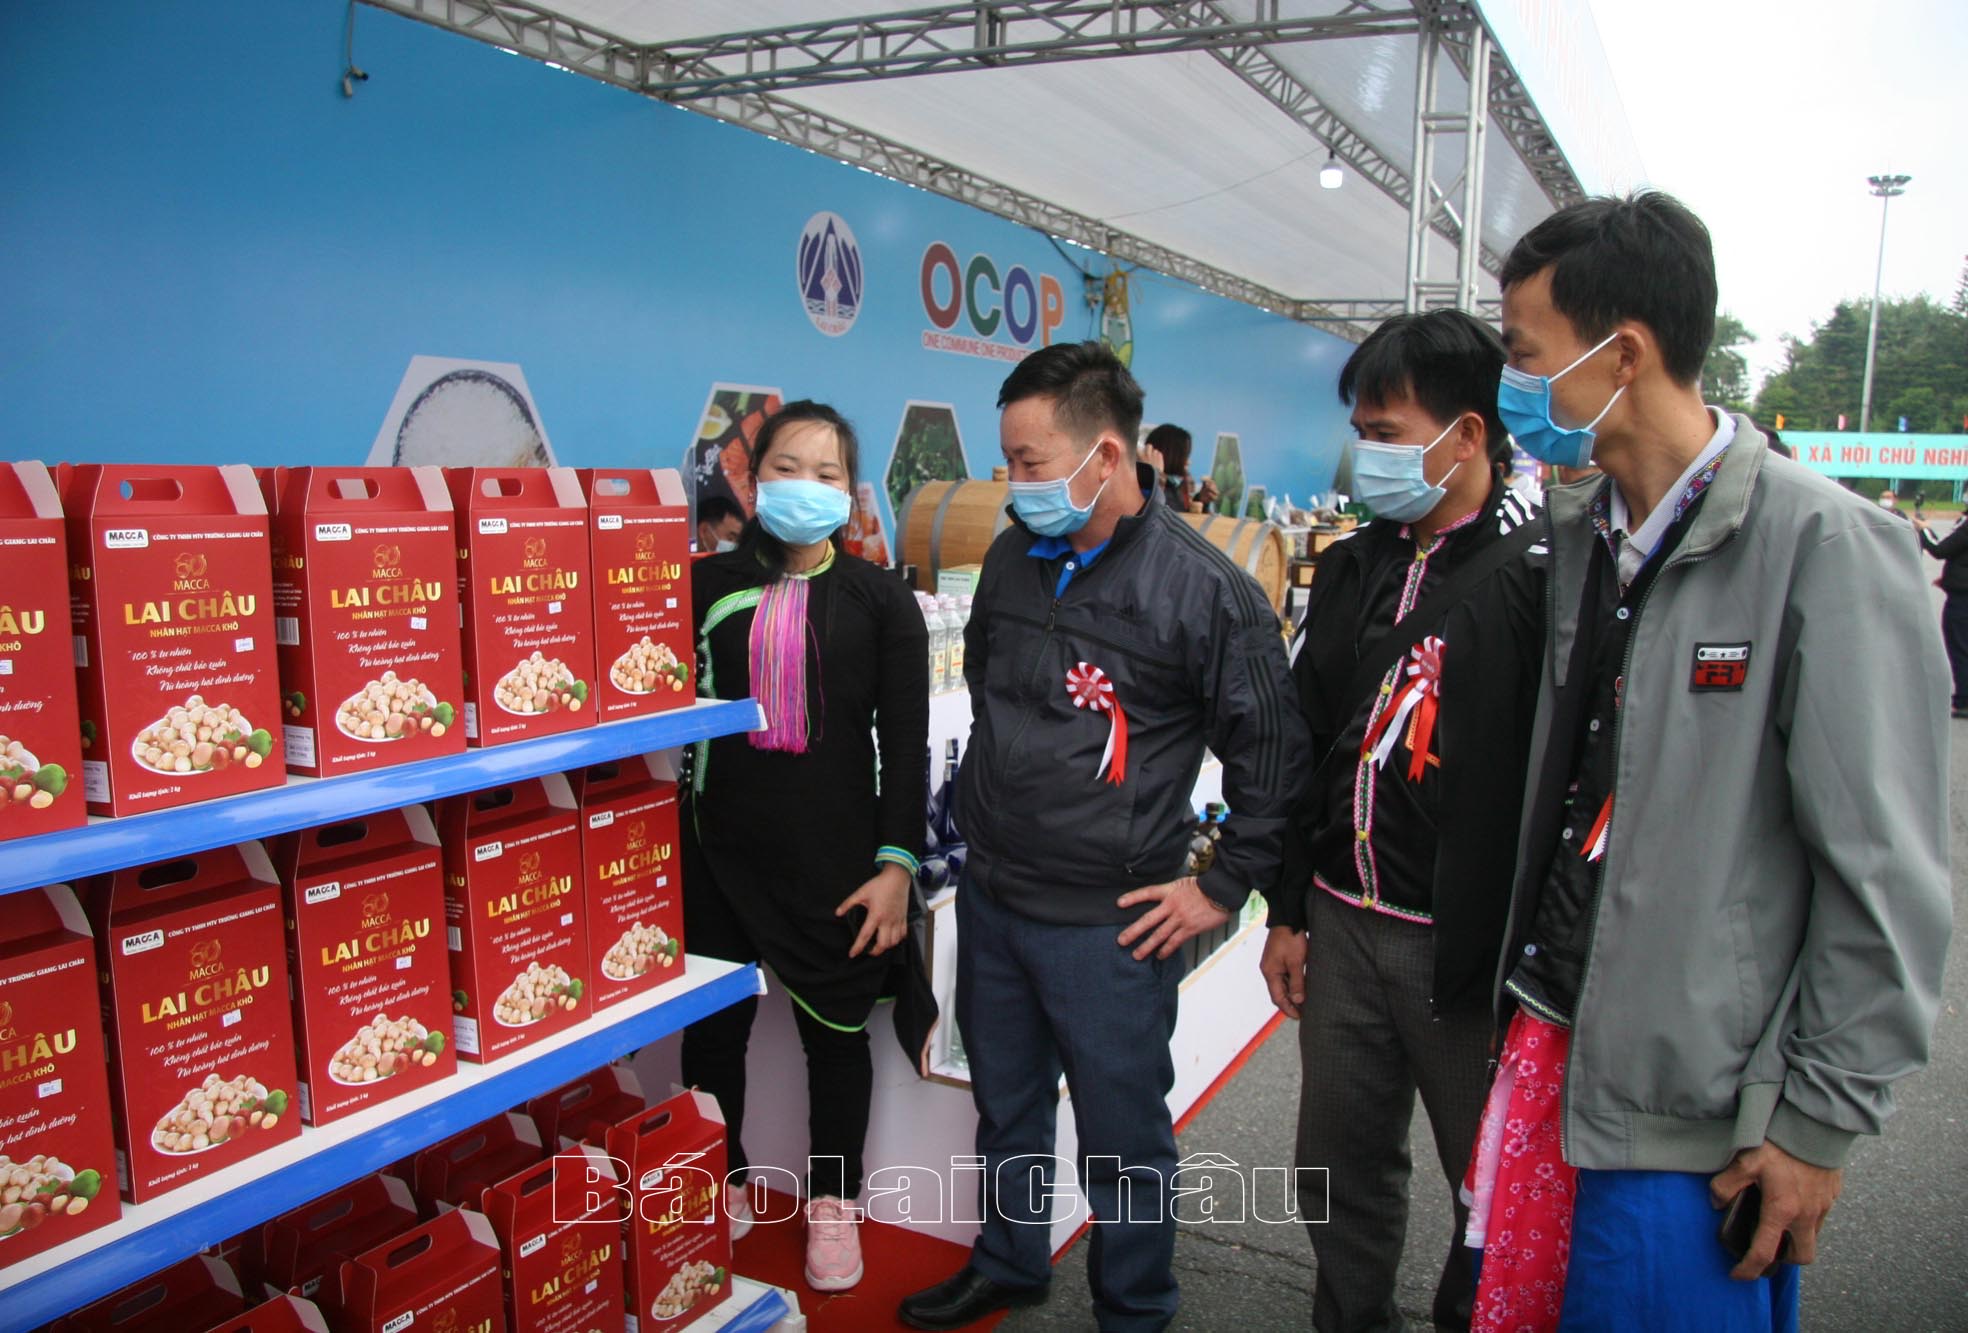 Sản phẩm OCOP của tỉnh Lai Châu trưng bày tại Ngày hội Văn hóa dân Mông toàn quốc lần thứ III được tổ chức tại Lai Châu năm 2022.